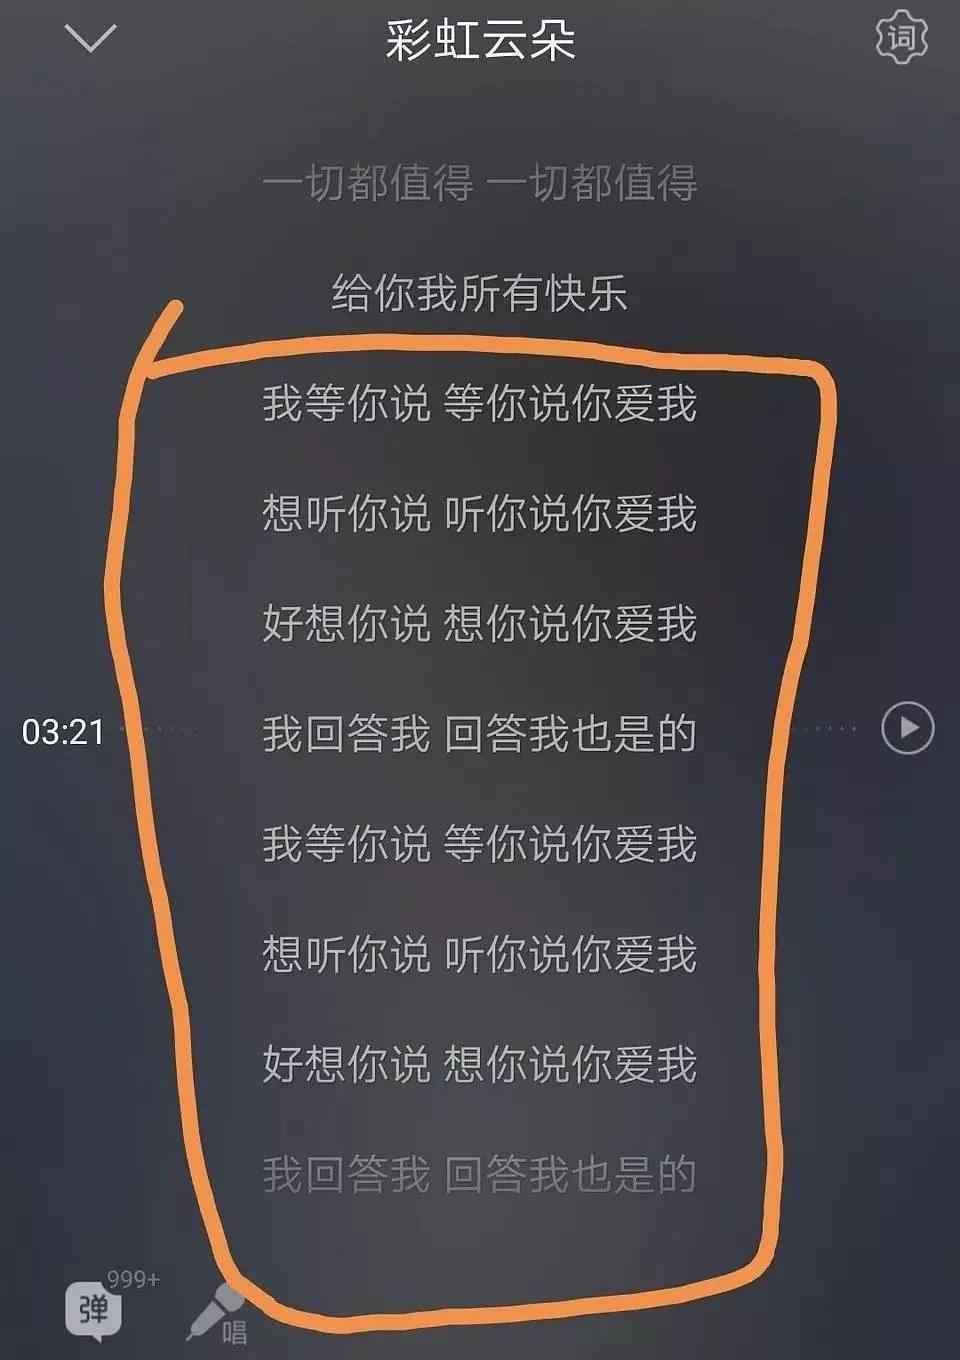 王俊凯公布最新歌曲《彩虹云朵》,歌曲歌词一直在循环系统